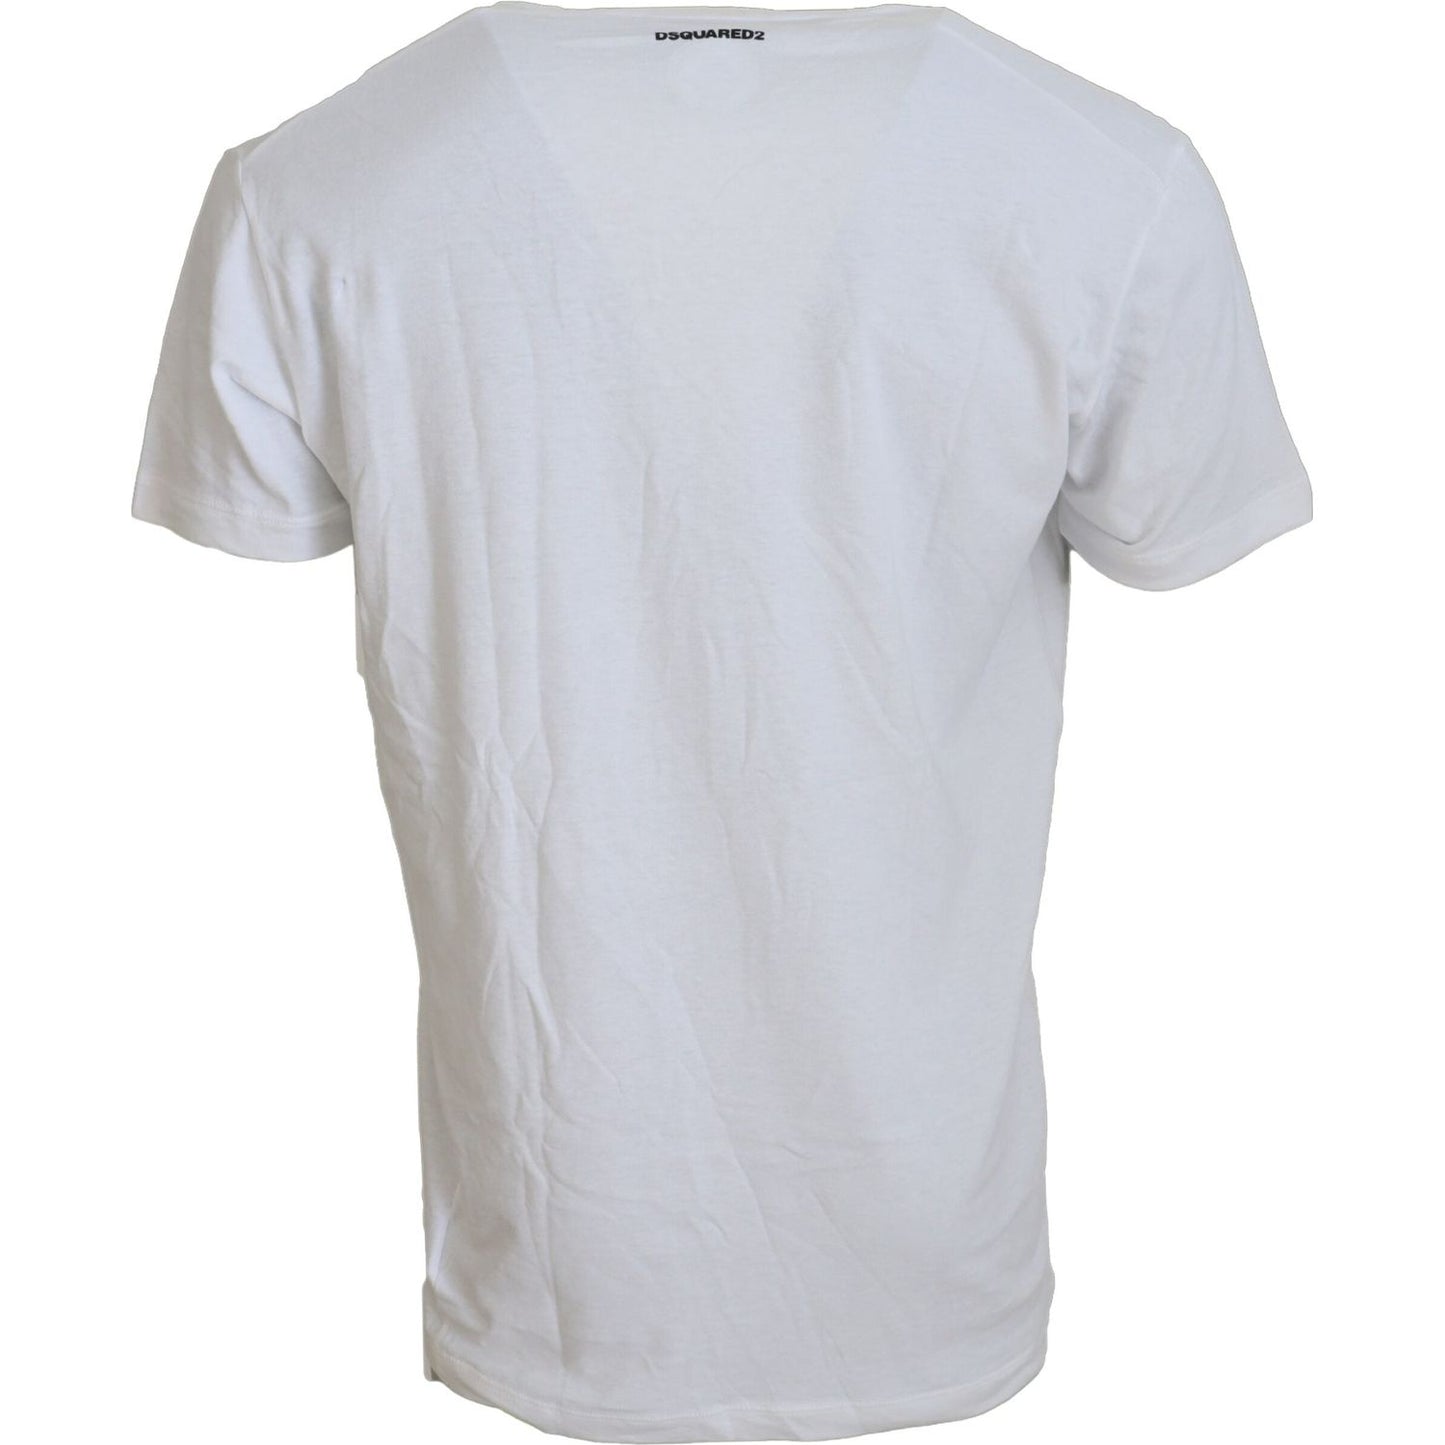 Dsquared² White Cotton Linen Short Sleeves V-neck T-shirt white-cotton-linen-short-sleeves-v-neck-t-shirt